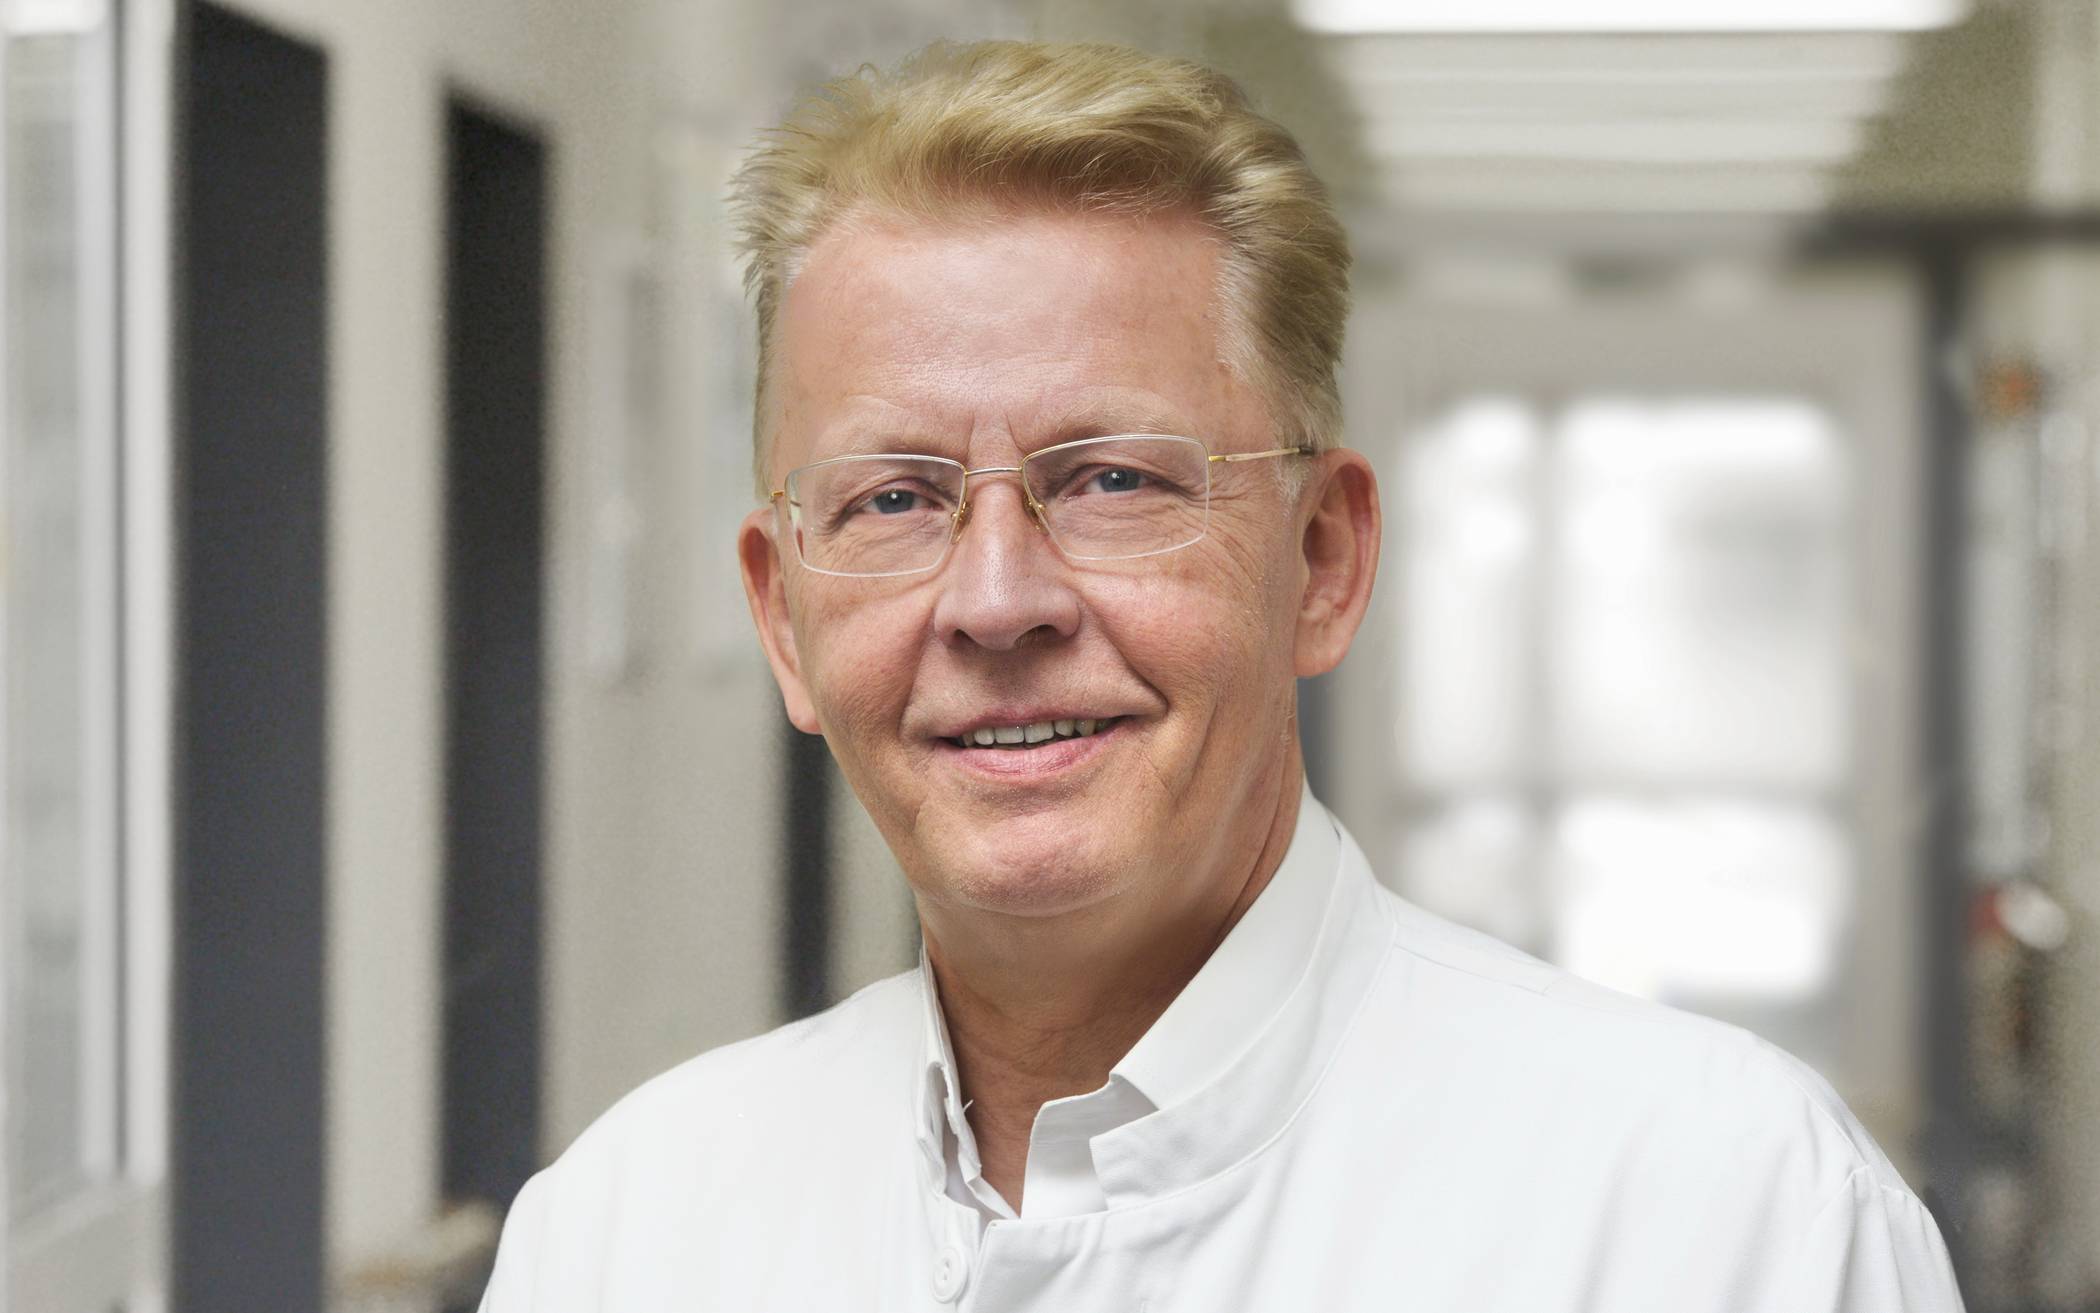  Prof. Dr. med. Kurt Rasche, Direktor der Klinik für Pneumologie, Allergologie, Schlaf- und Beatmungsmedizin am Helios Universitätsklinikum Wuppertal. 